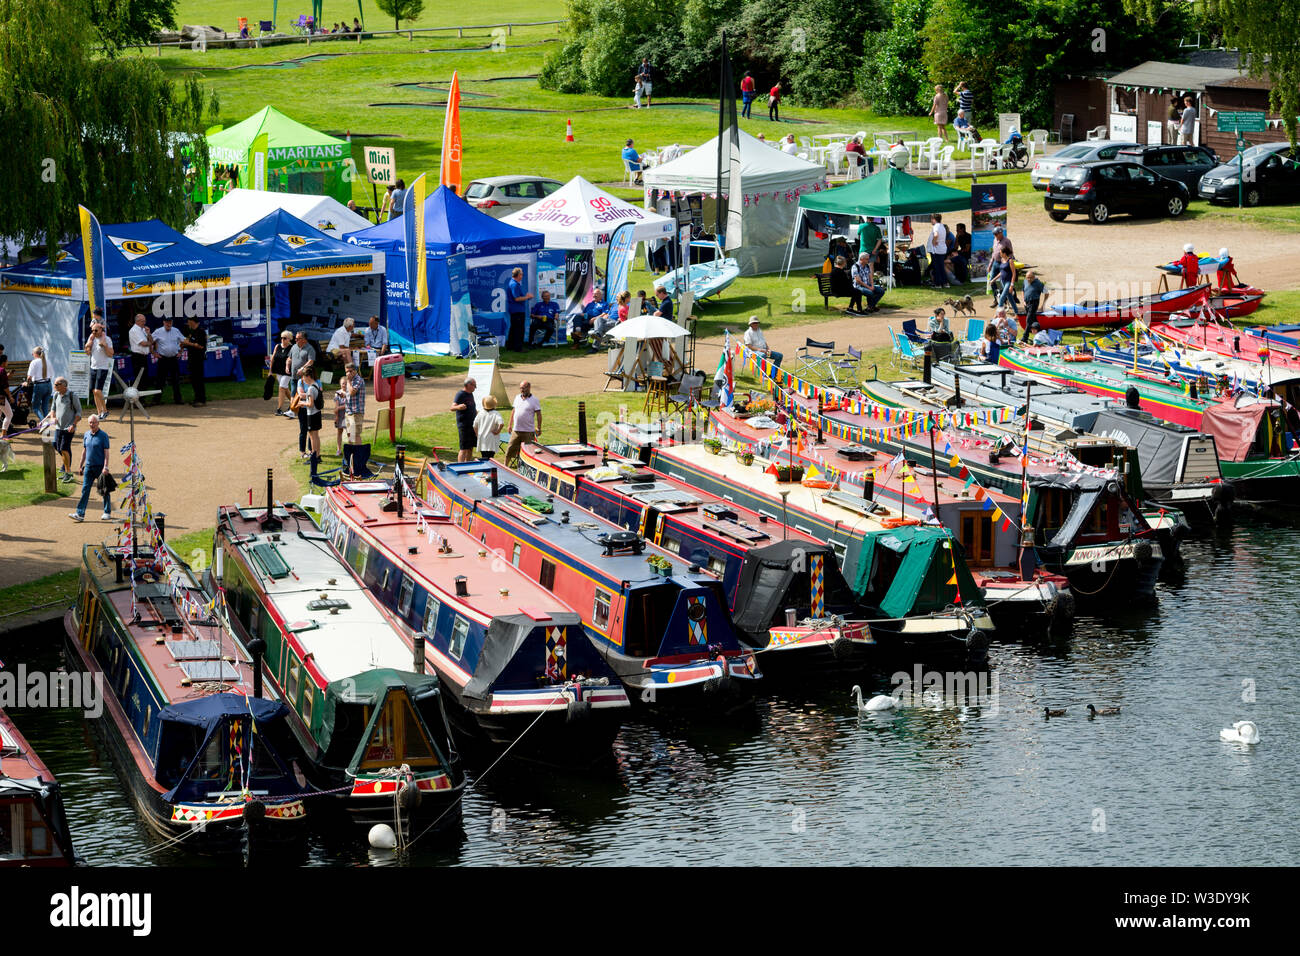 Narrowboats gefesselt auf dem Fluss Avon am 2019 Stratford-upon-Avon River Festival, Großbritannien Stockfoto